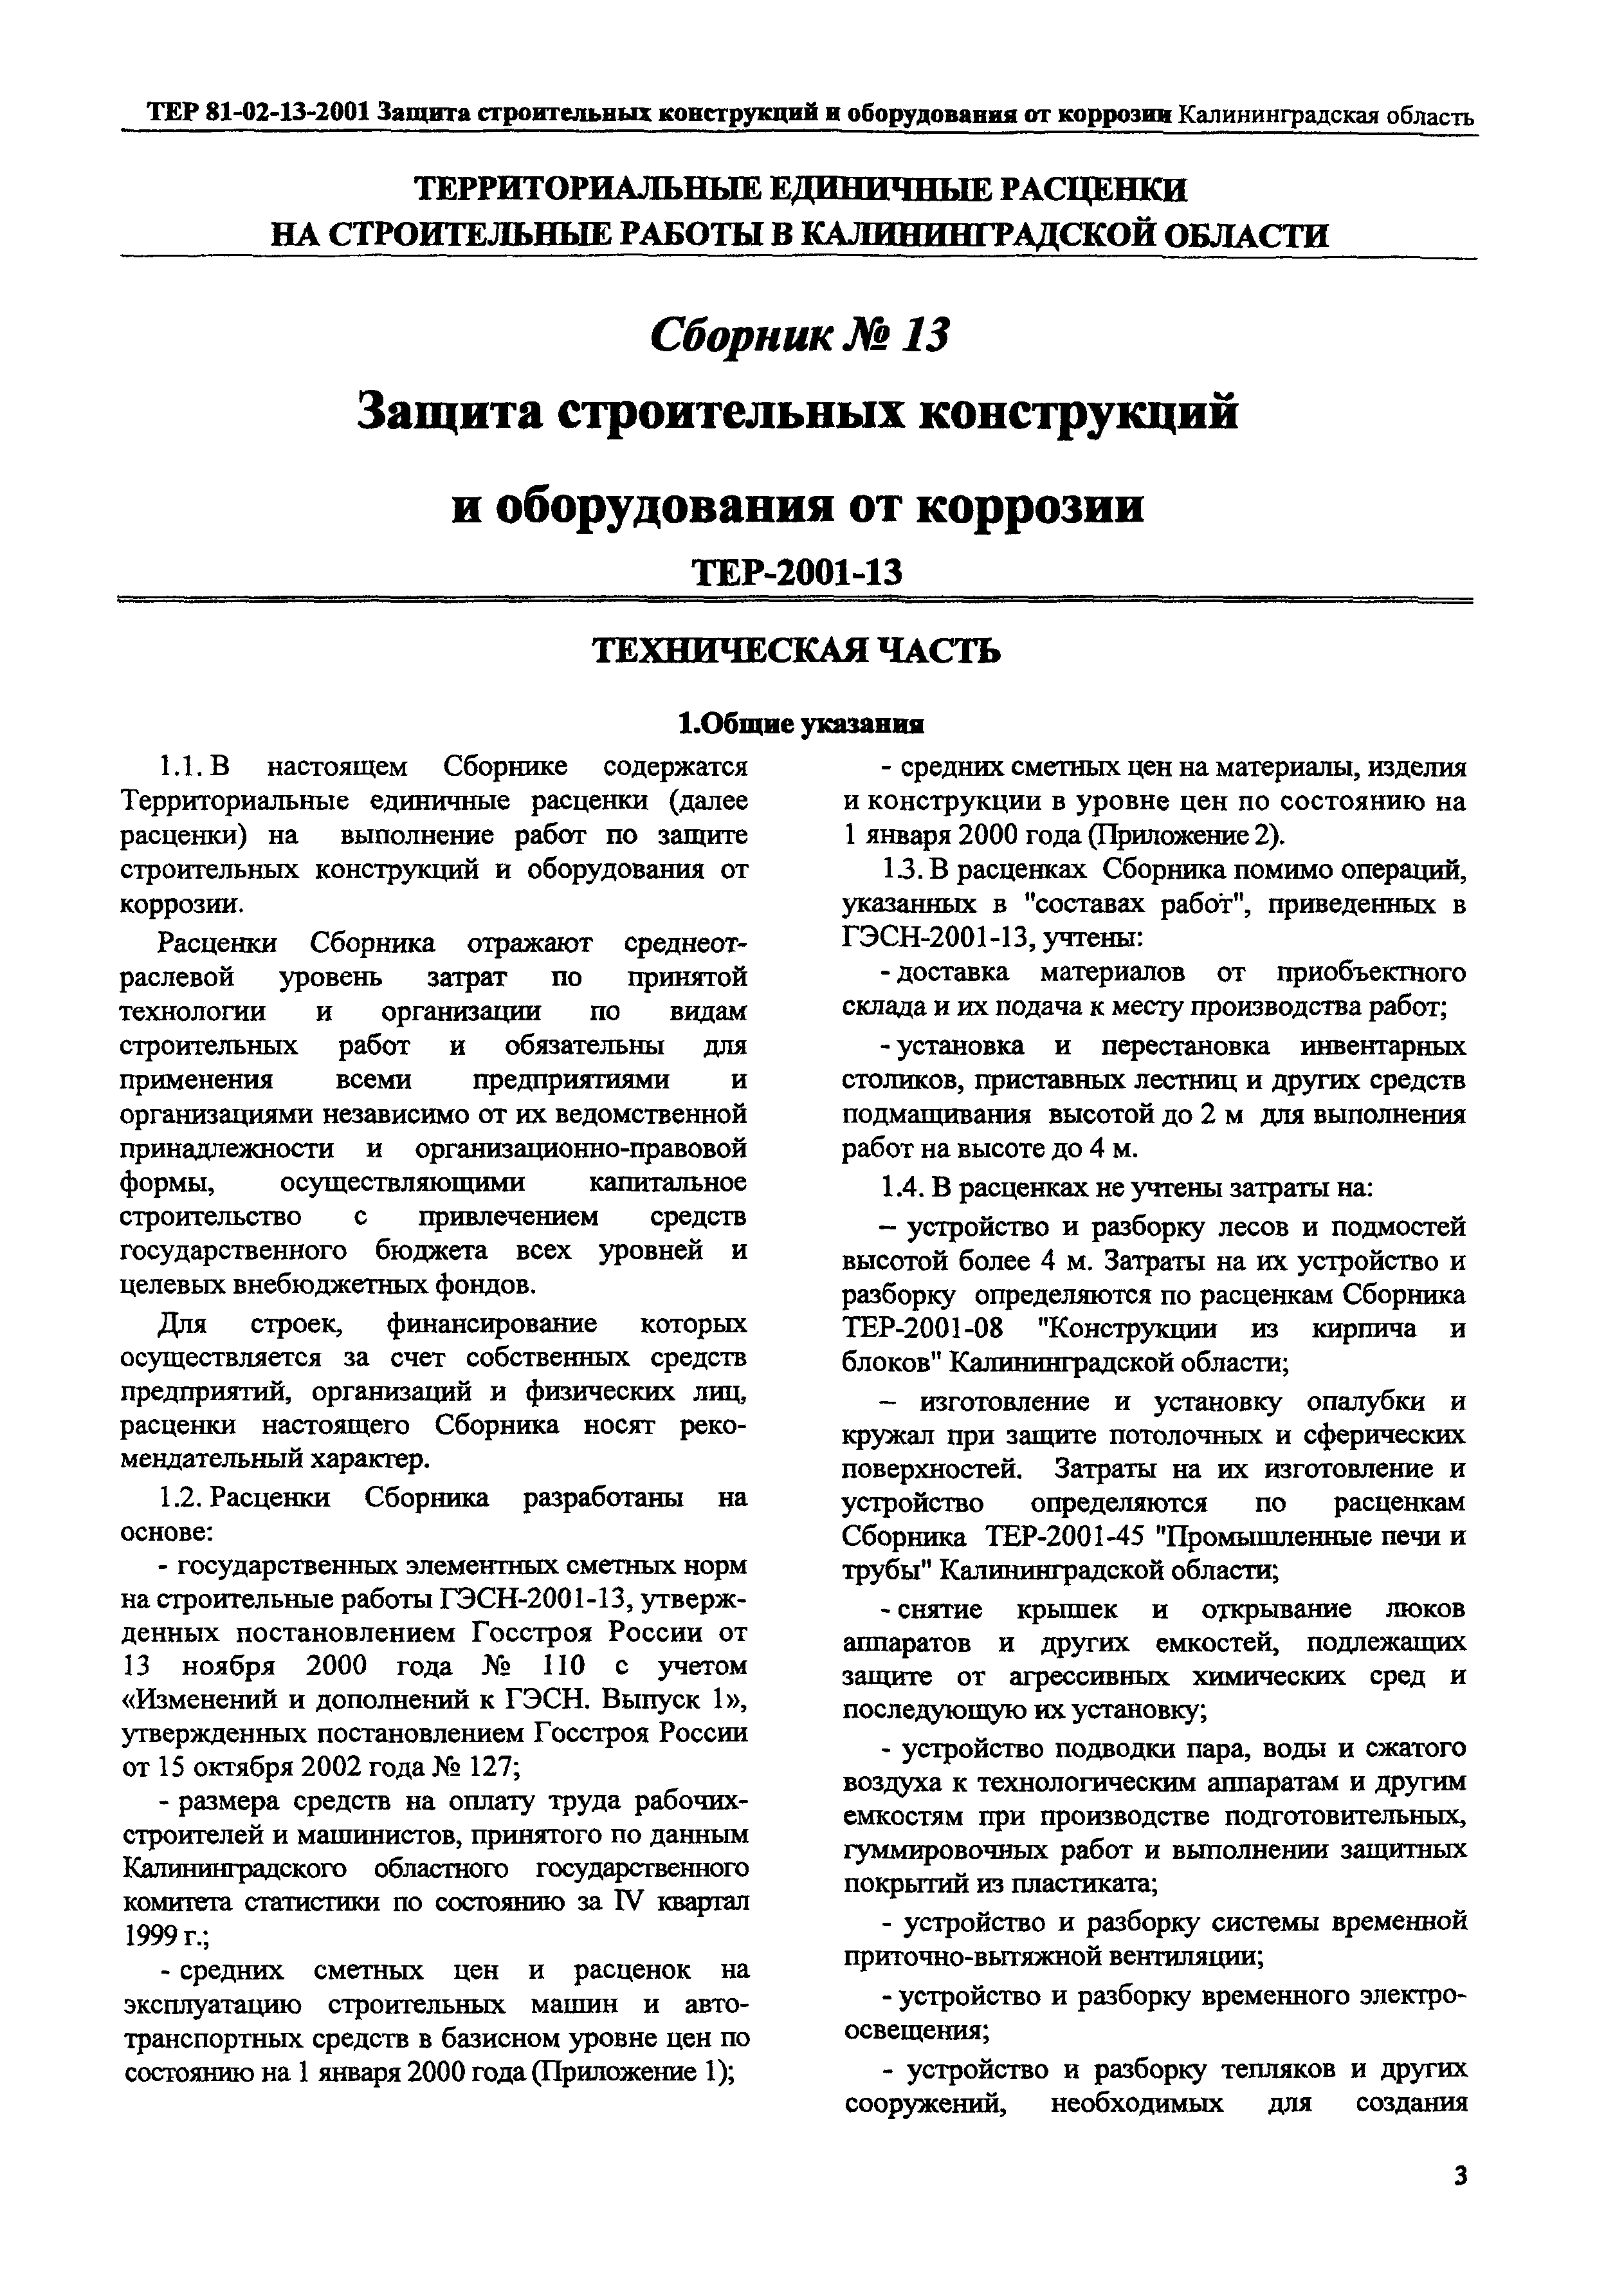 ТЕР Калининградская область 2001-13